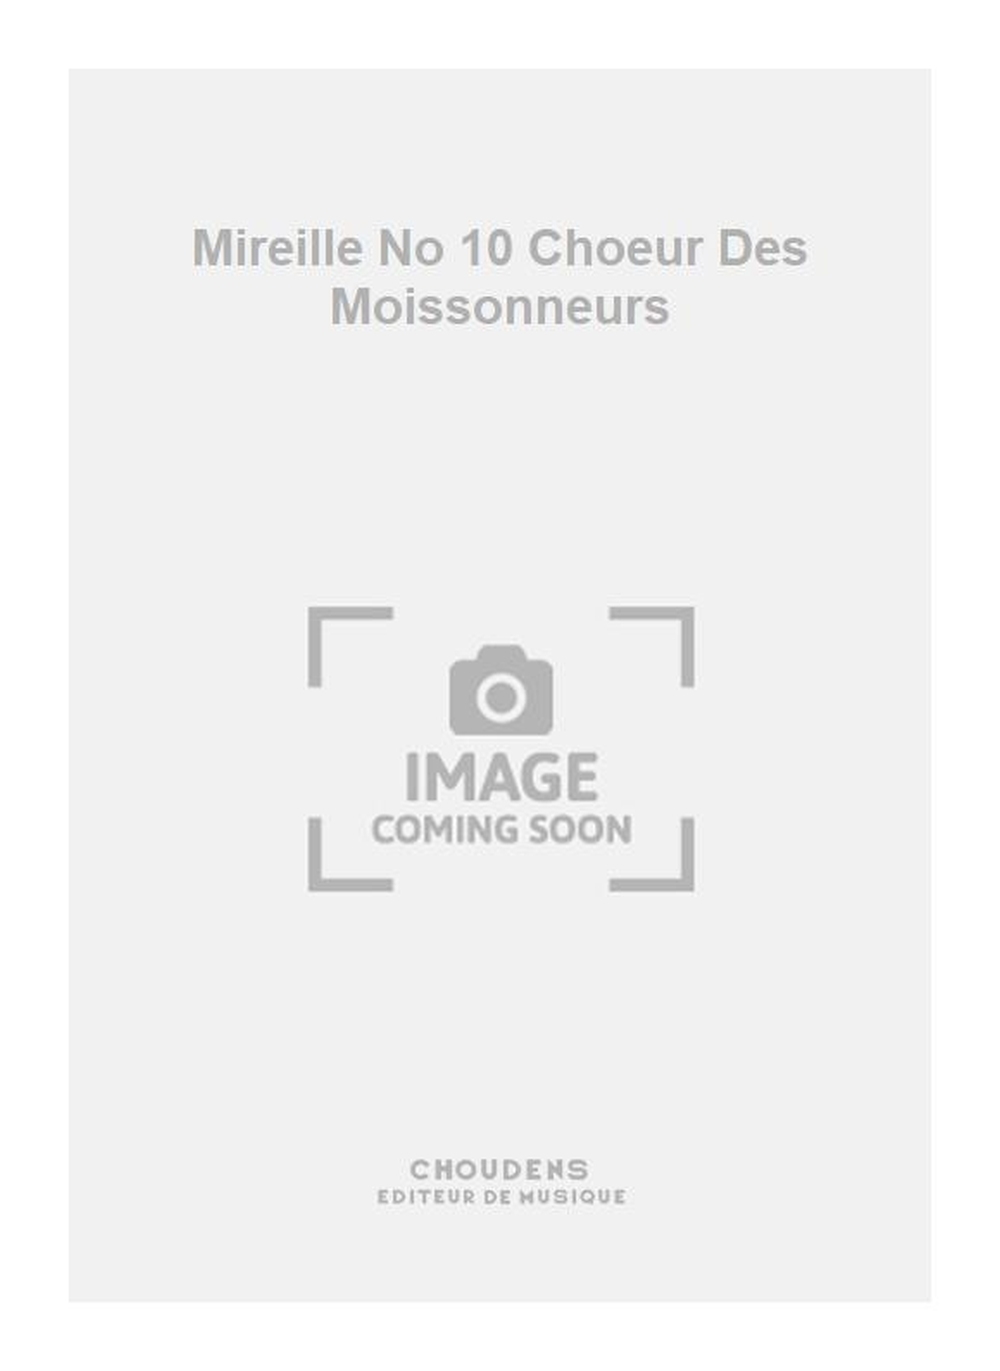 Charles Gounod: Mireille No 10 Choeur Des Moissonneurs